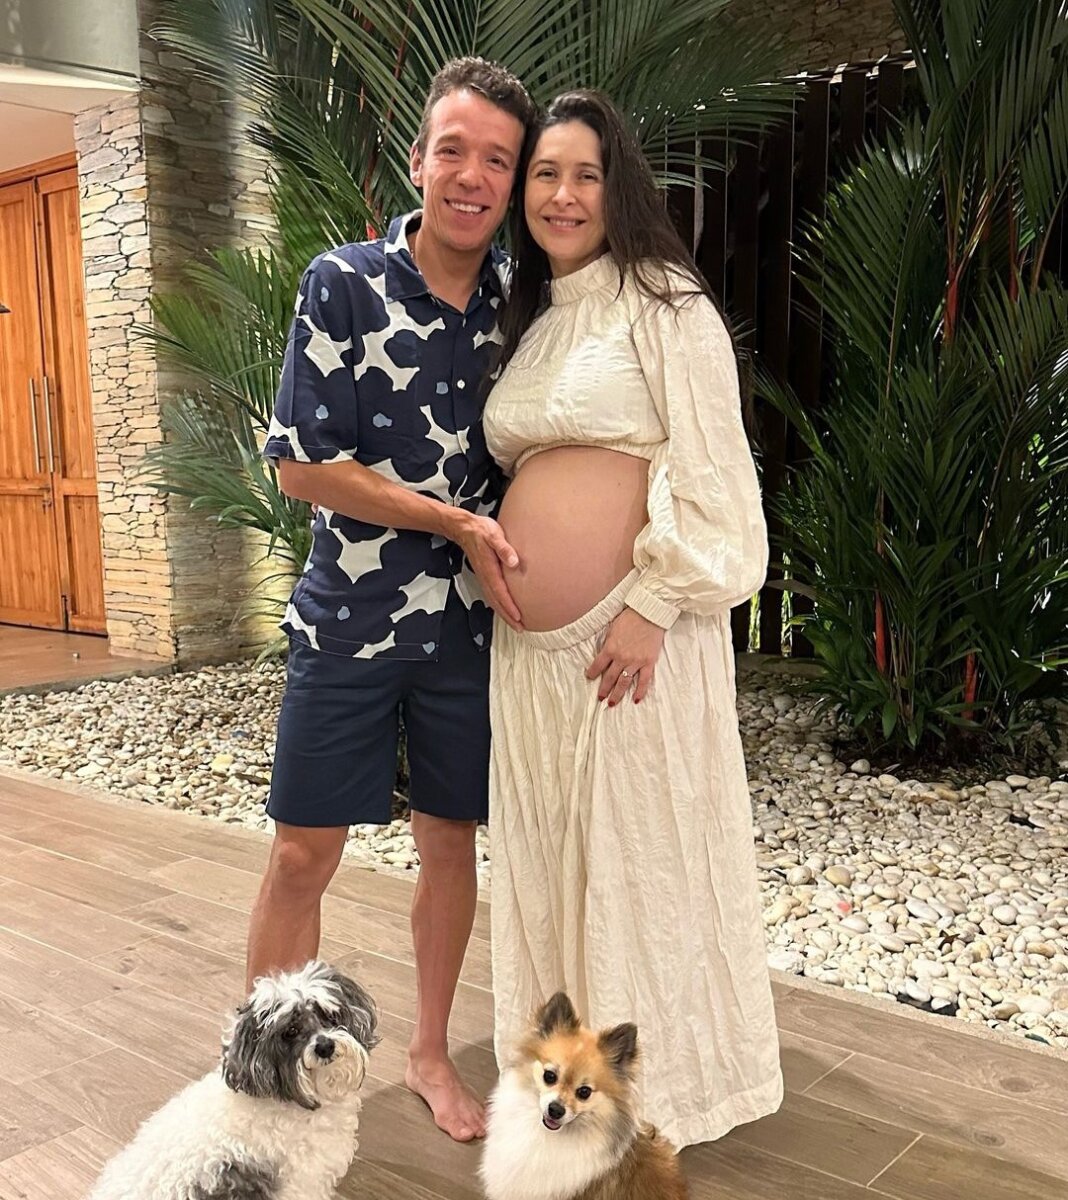 “El team sigue creciendo”: Rigoberto Urán mostró cómo va el embarazo de su esposa Michelle Durango y Rigoberto Urán están esperando a su segundo hijo.